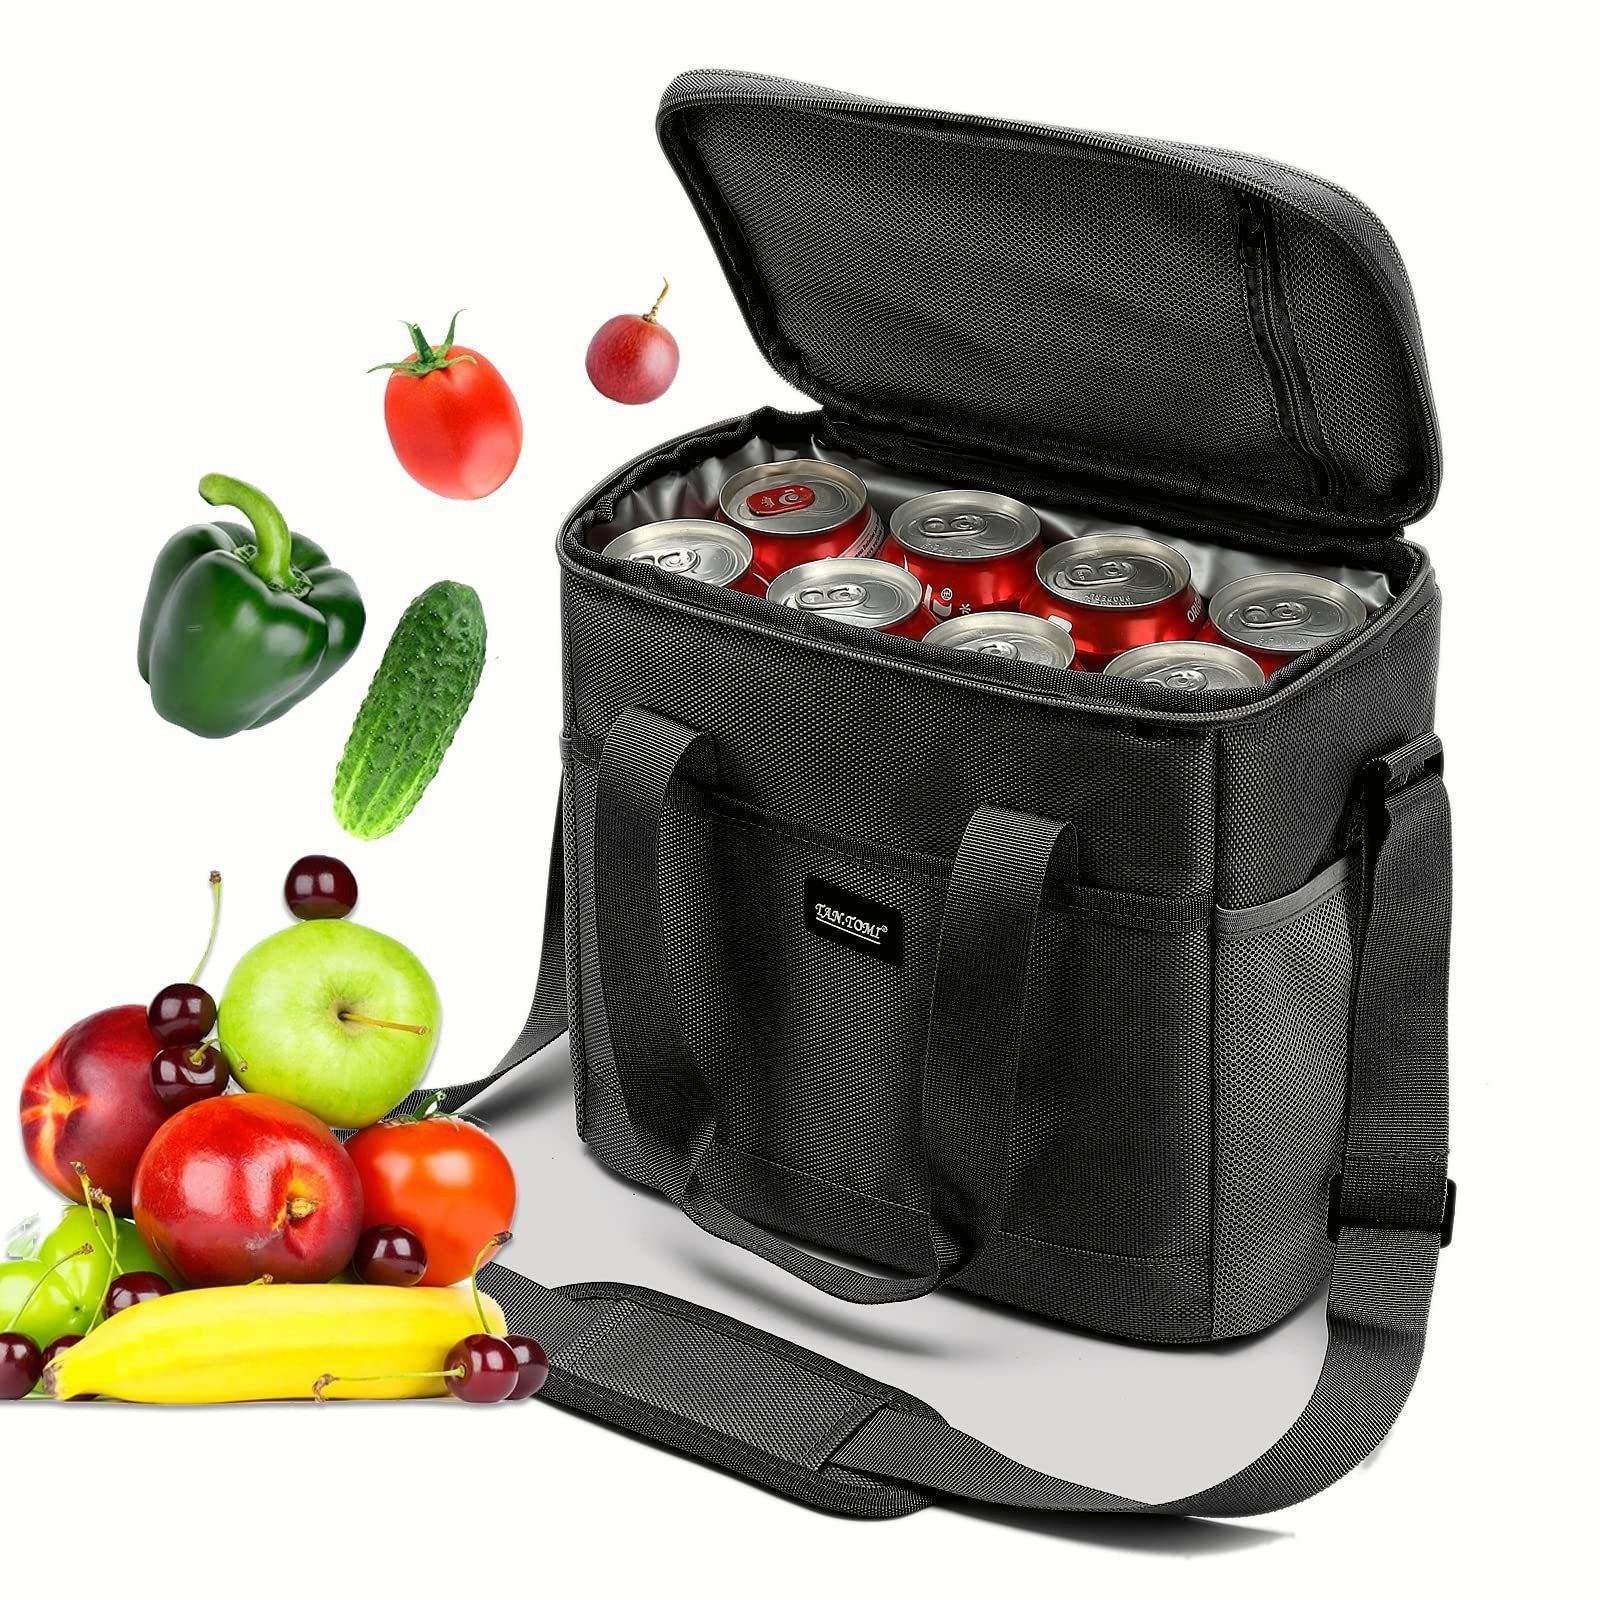 TAN.TOMI Picknickkorb Lunchtasche Kühltasche Isoliertasche Lunchbag Thermotasche, 17.2 Liter, vollständig isoliert, faltbar, angenehmen Griff zum Tragen Schwarz